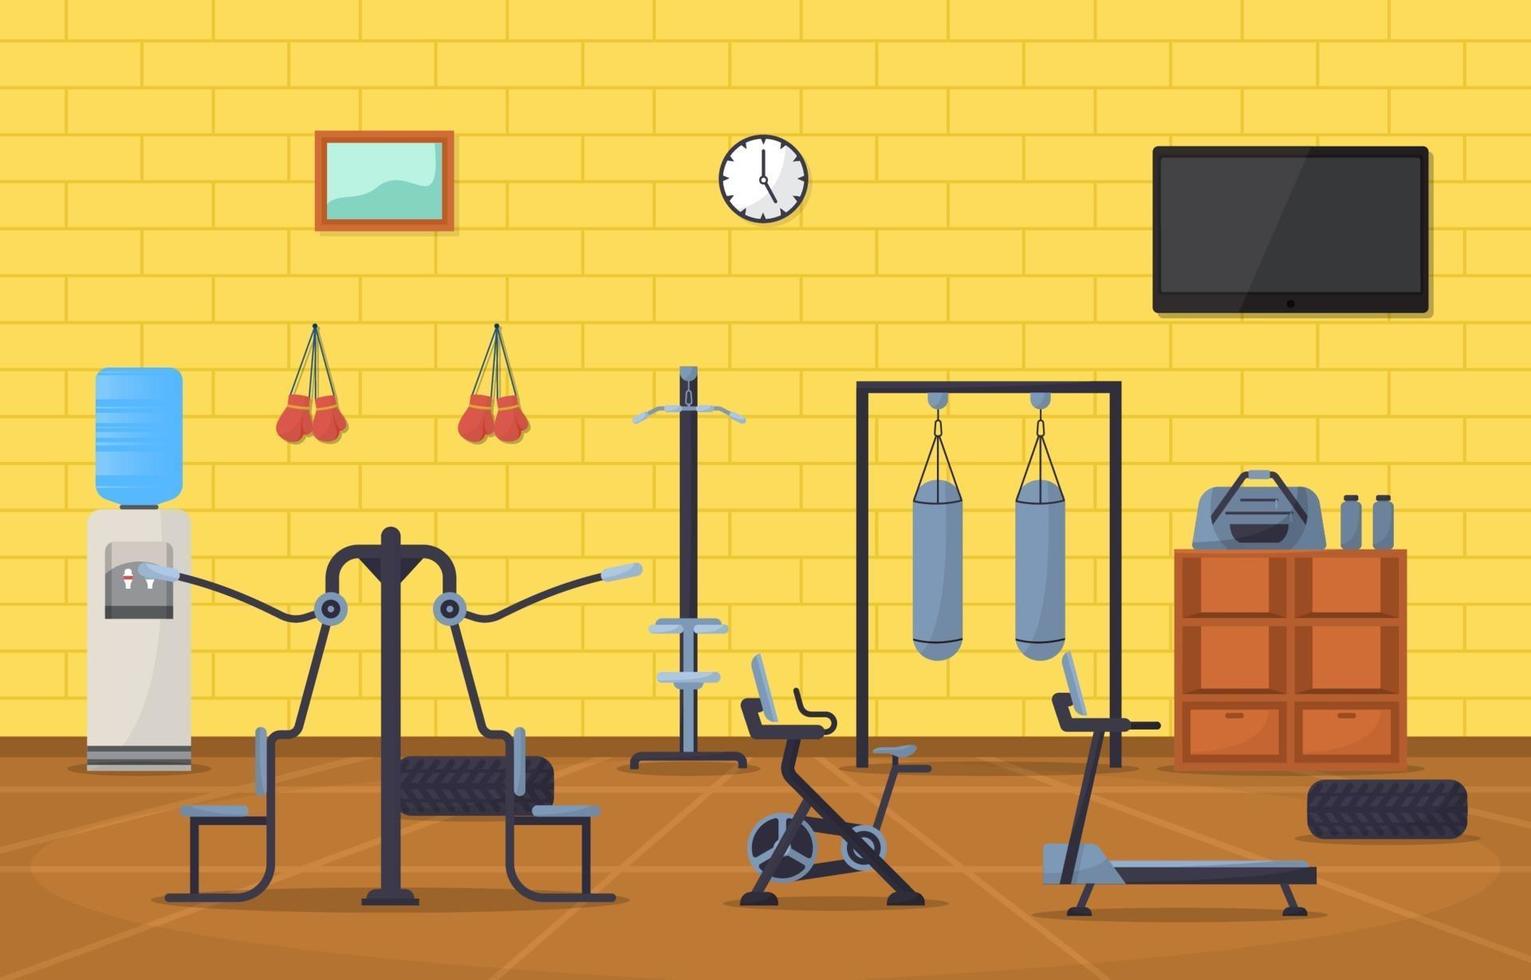 intérieur de la salle de fitness avec illustration vectorielle de matériel de musculation vecteur